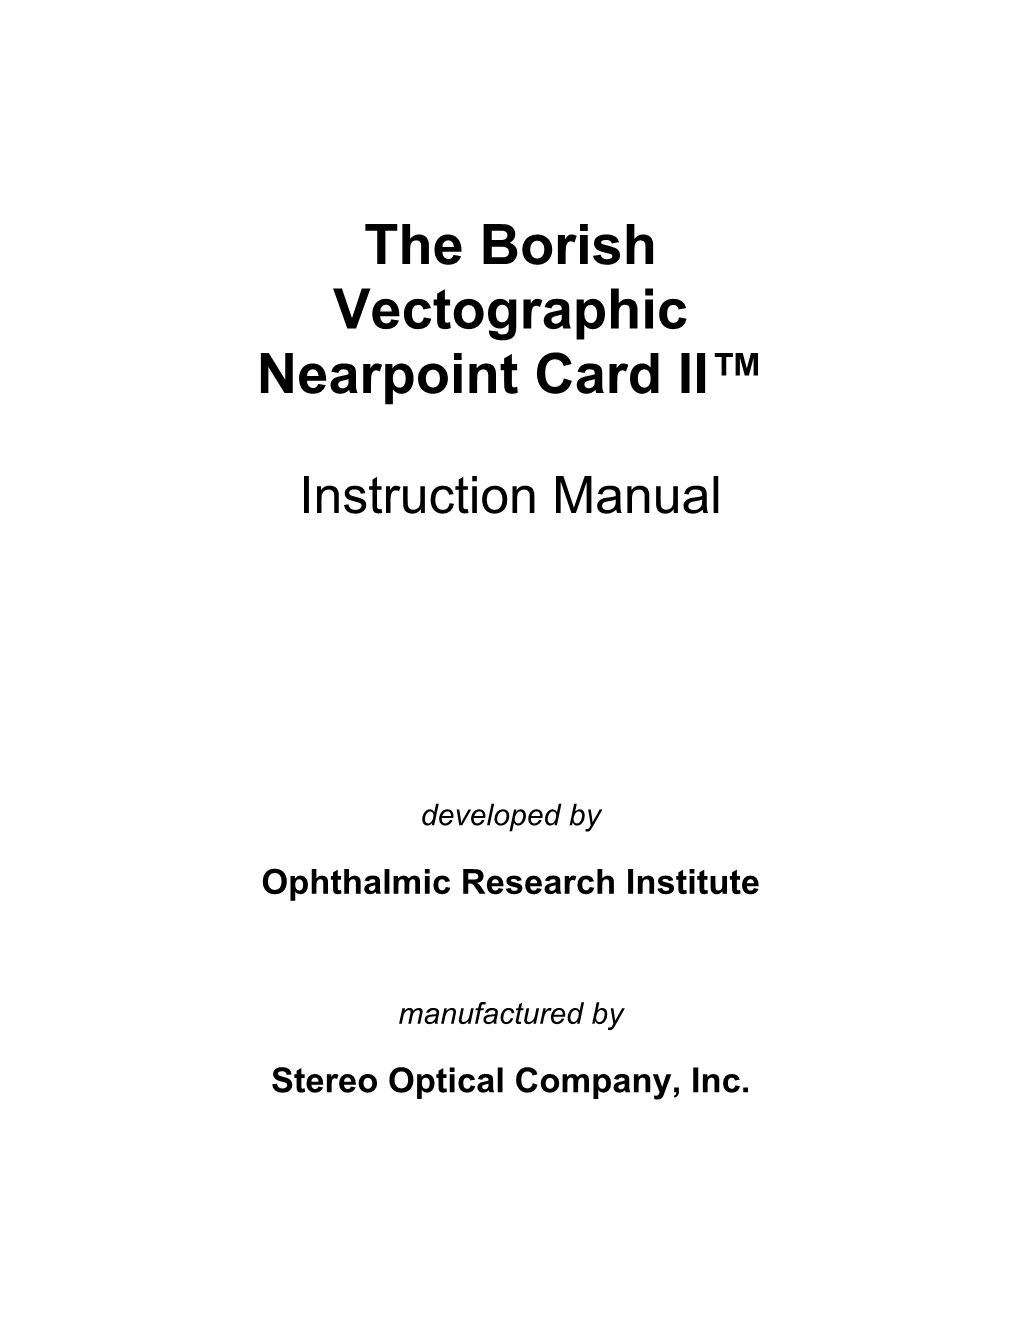 The Borish Vectographic Nearpoint Card II™